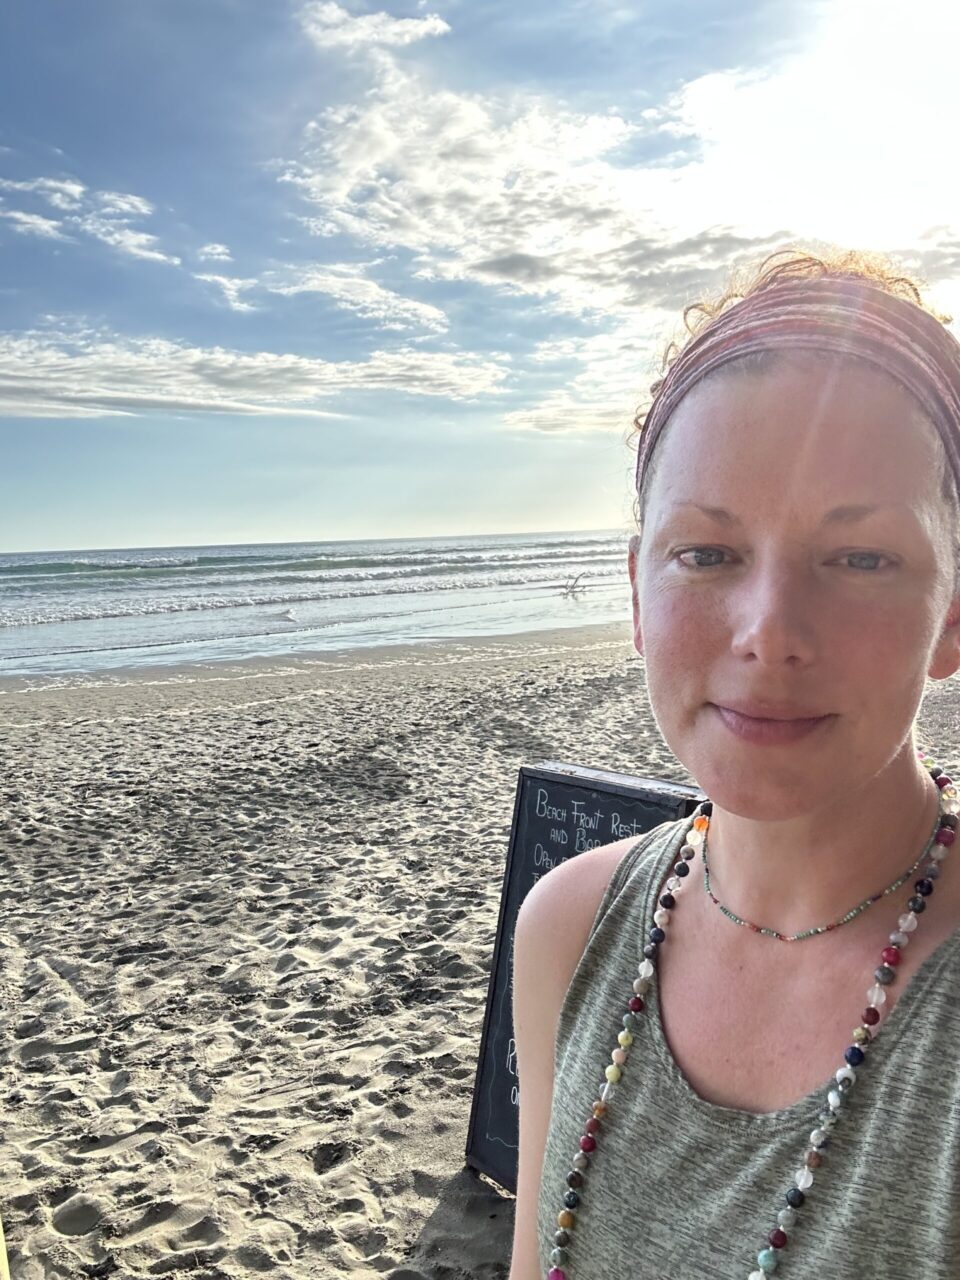 Author at yoga retreat in costa rica